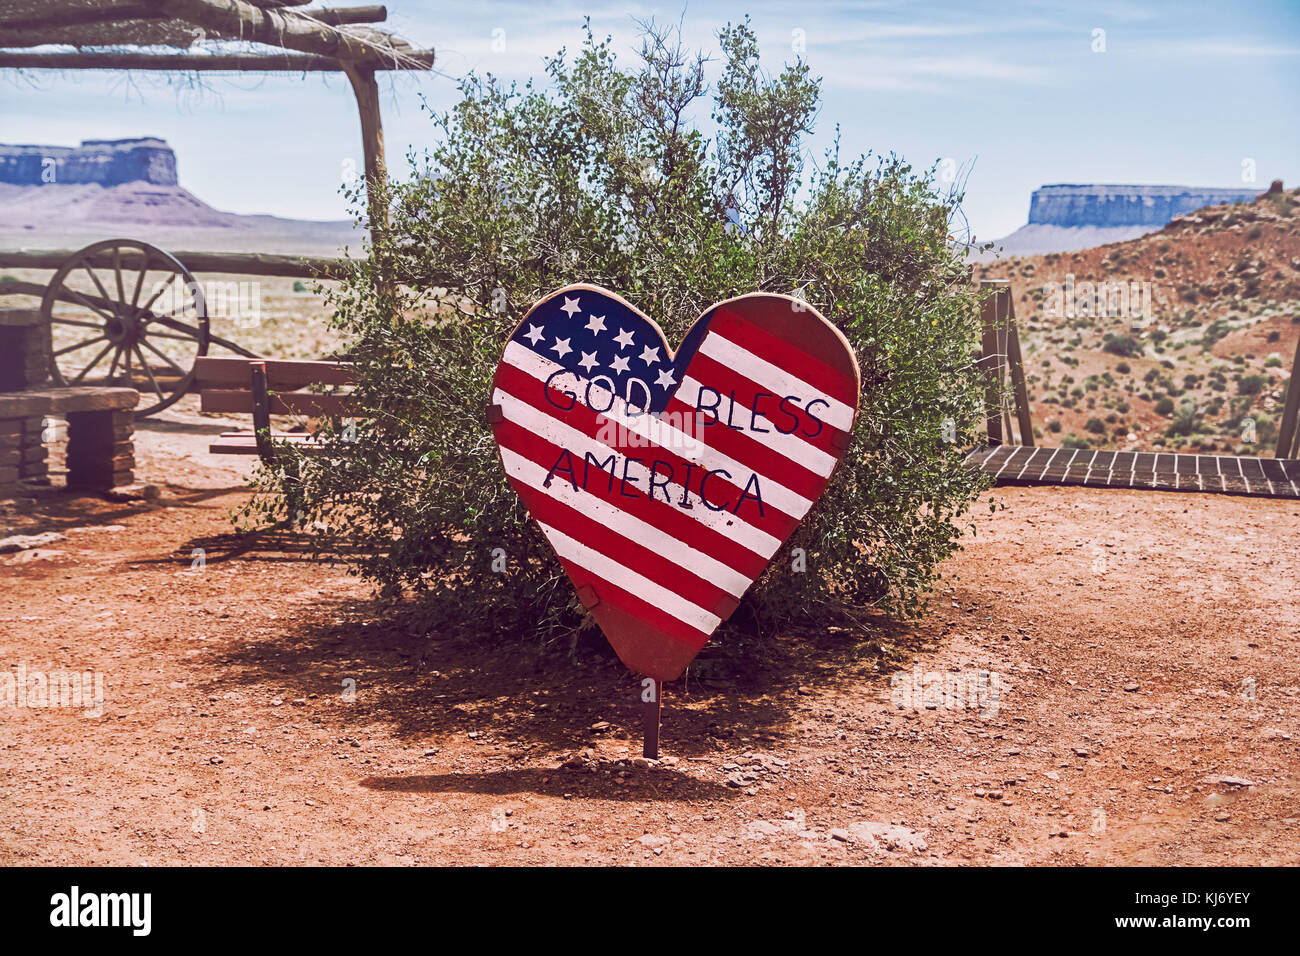 Eine herzförmige Zeichen, die die amerikanische Fahne mit der Aufschrift "Gott segne Amerika", Monument Valley, Utah, USA darstellt. Stockfoto